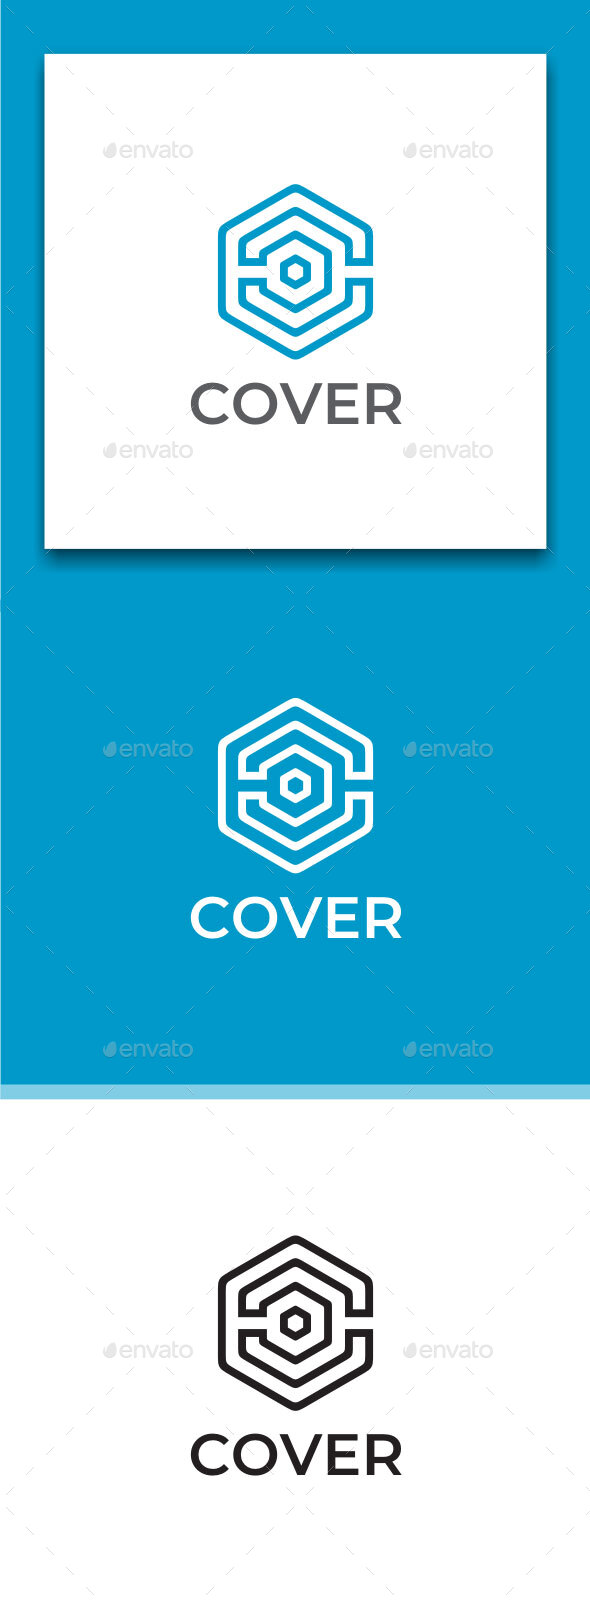 Cover - Letter C Logo Design